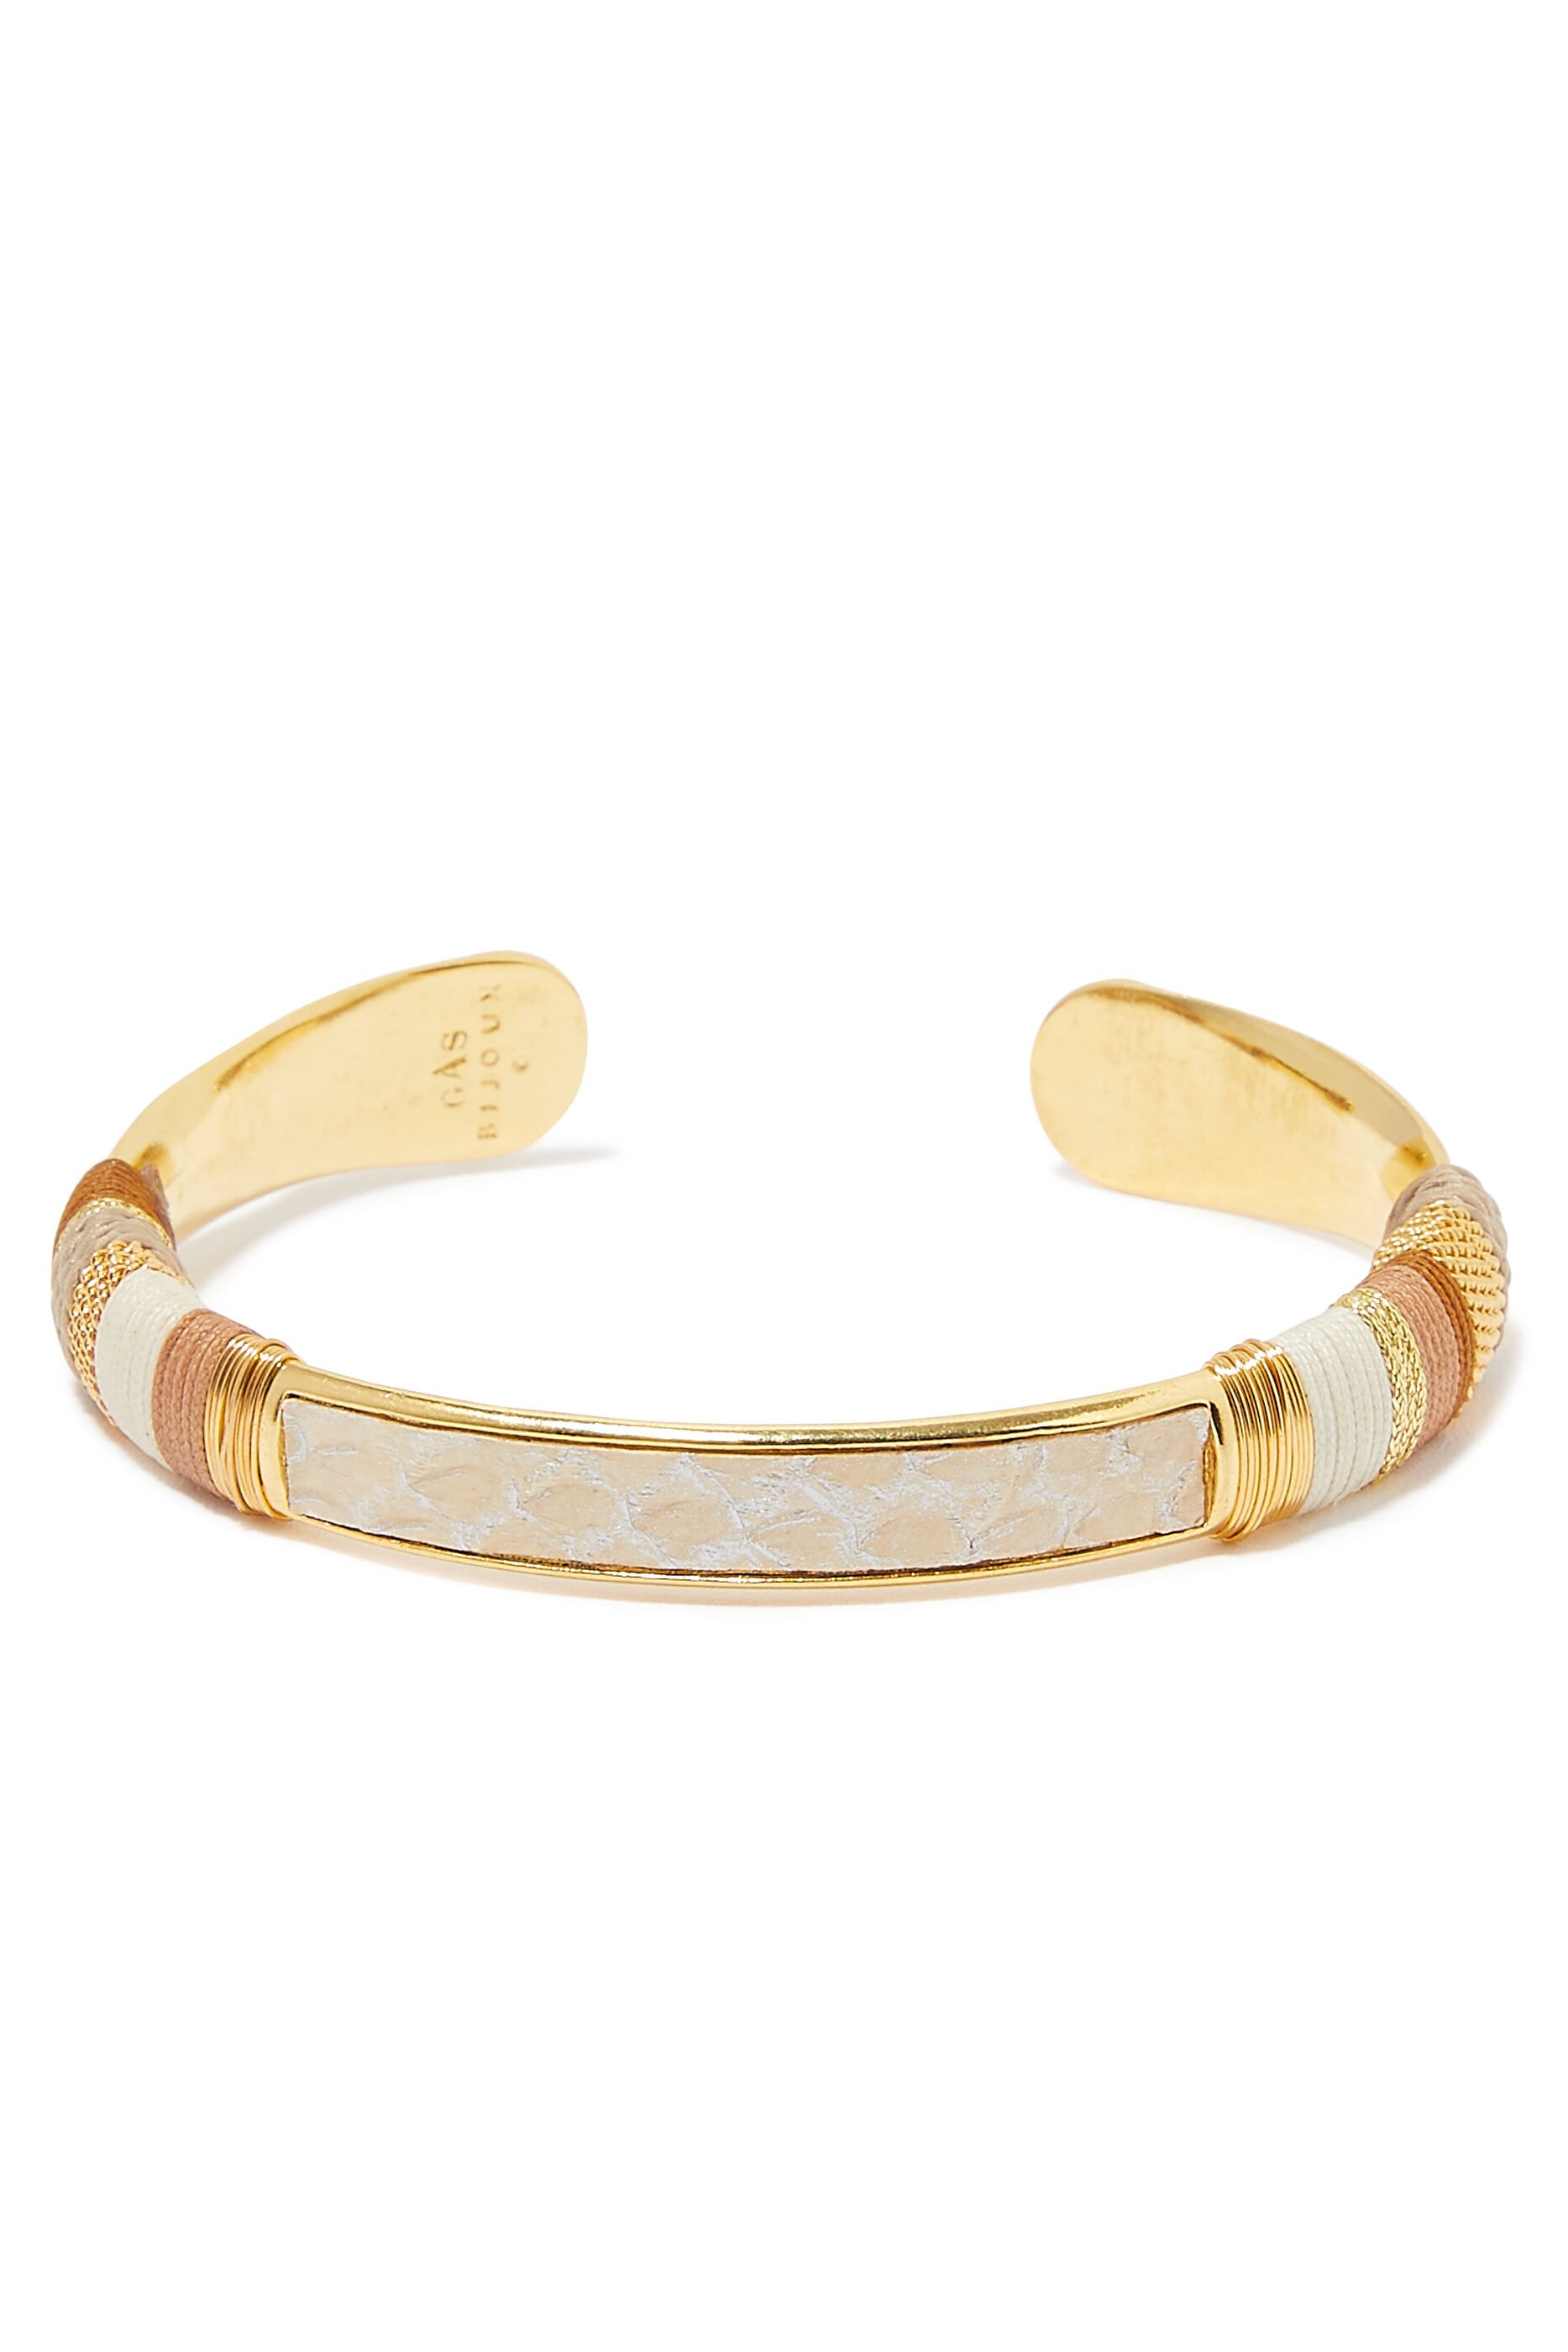 Bracelet Massai Py:Gold :One Size